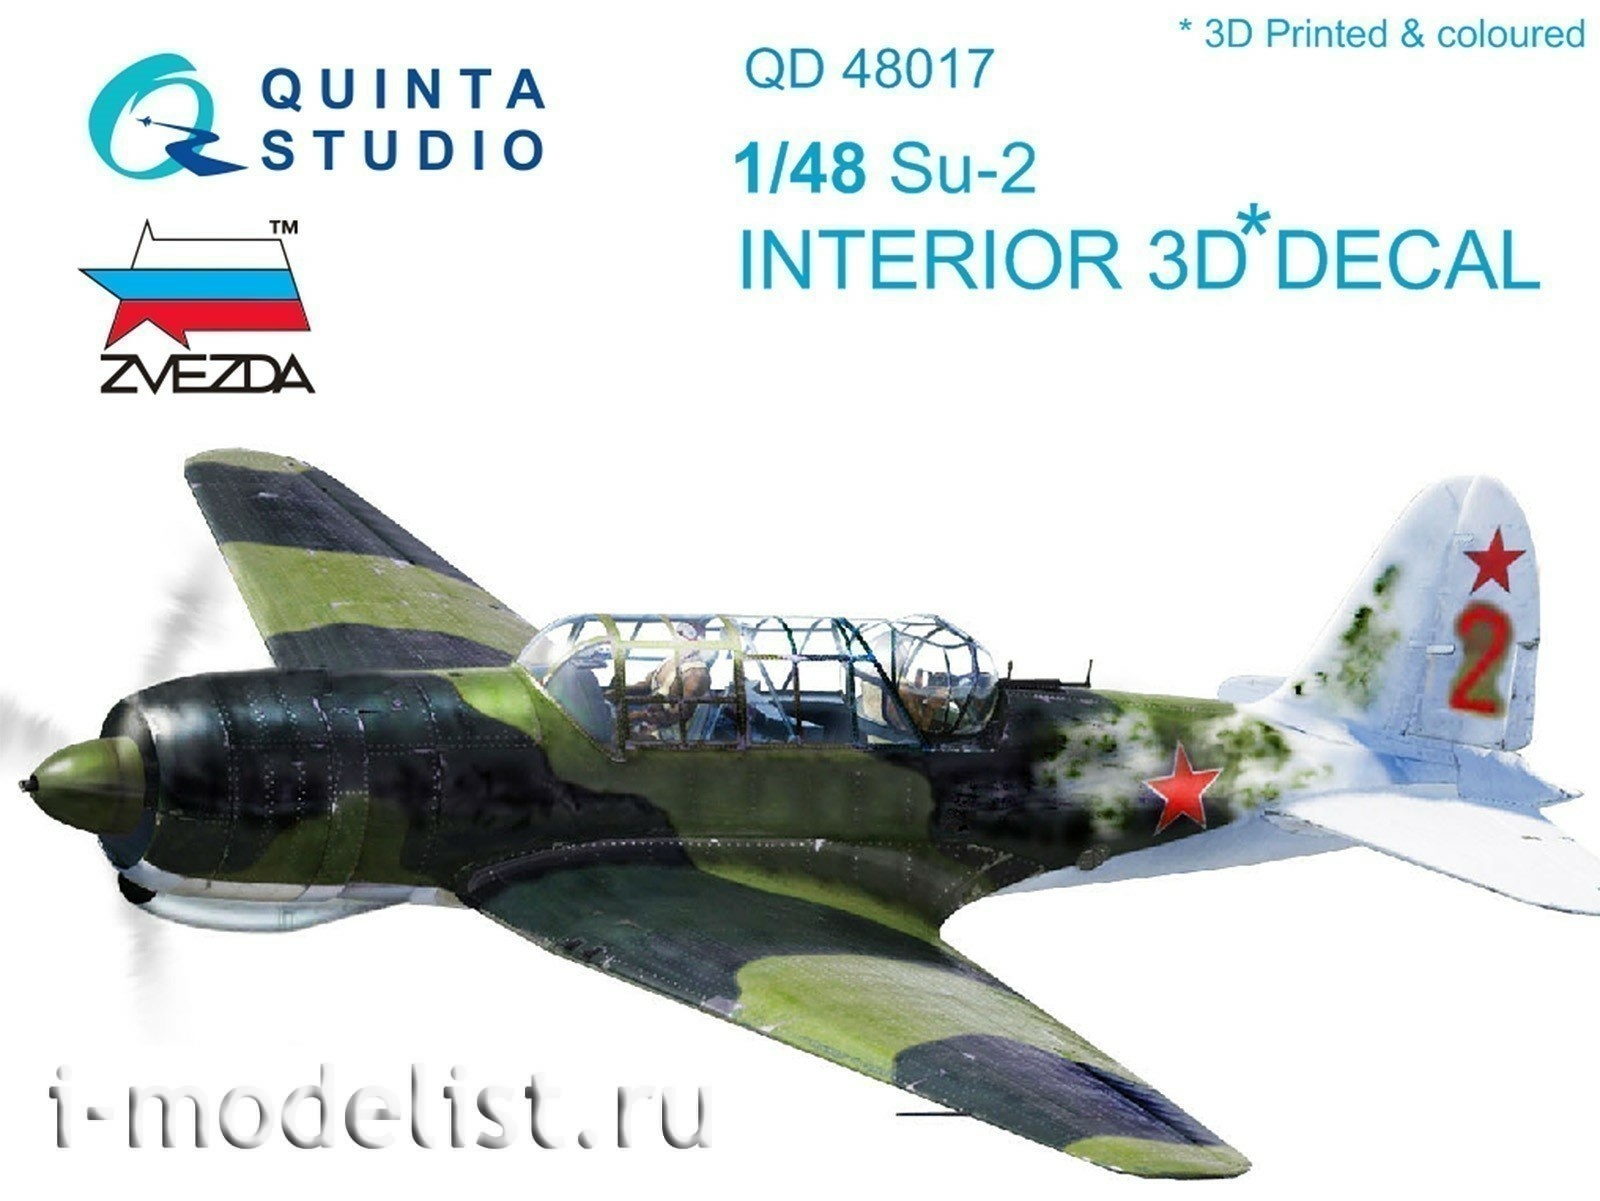 QD48017 Quinta Studio 1/48 3D Decal interior cabin su-2 (for the Zvezda model)